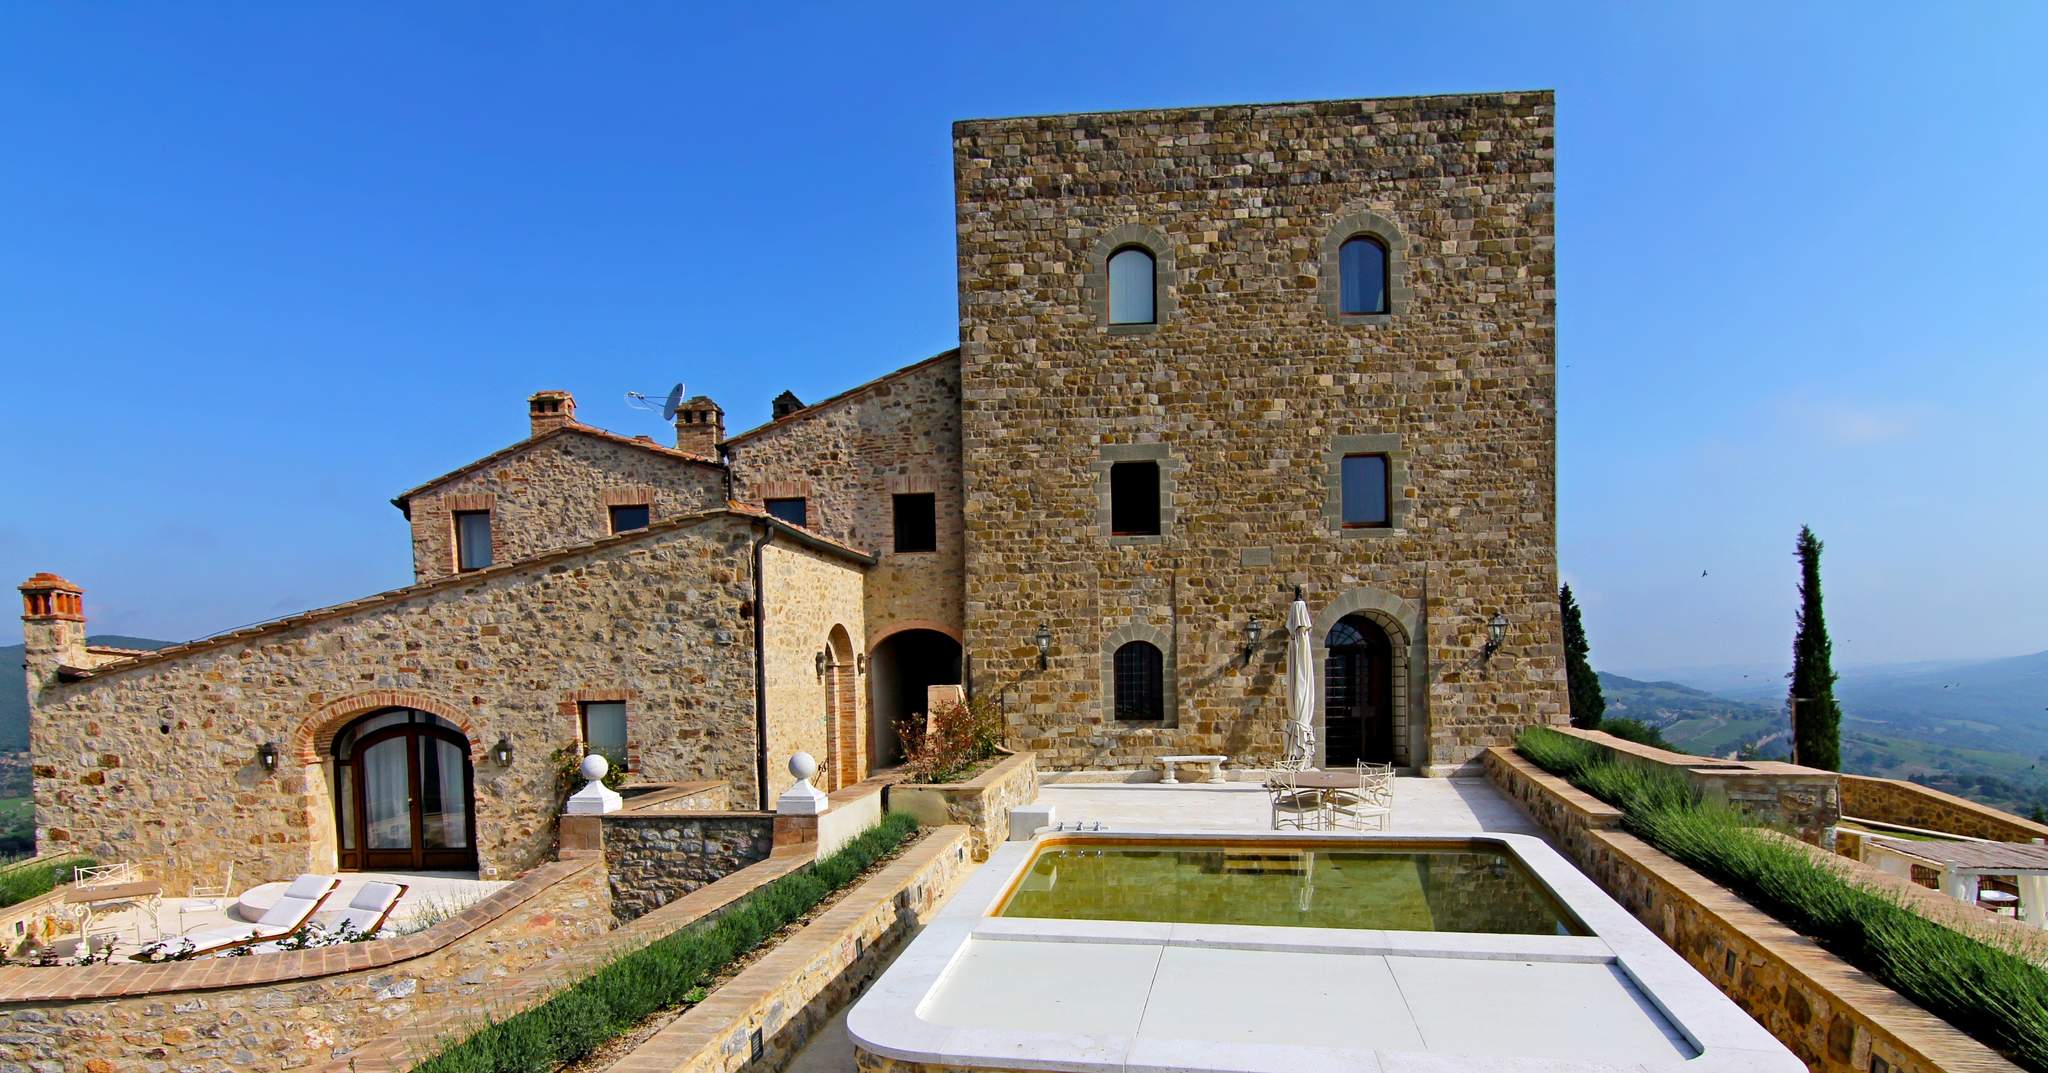 Castello Di Velona in Castelnuovo Dell'Abate, Italy